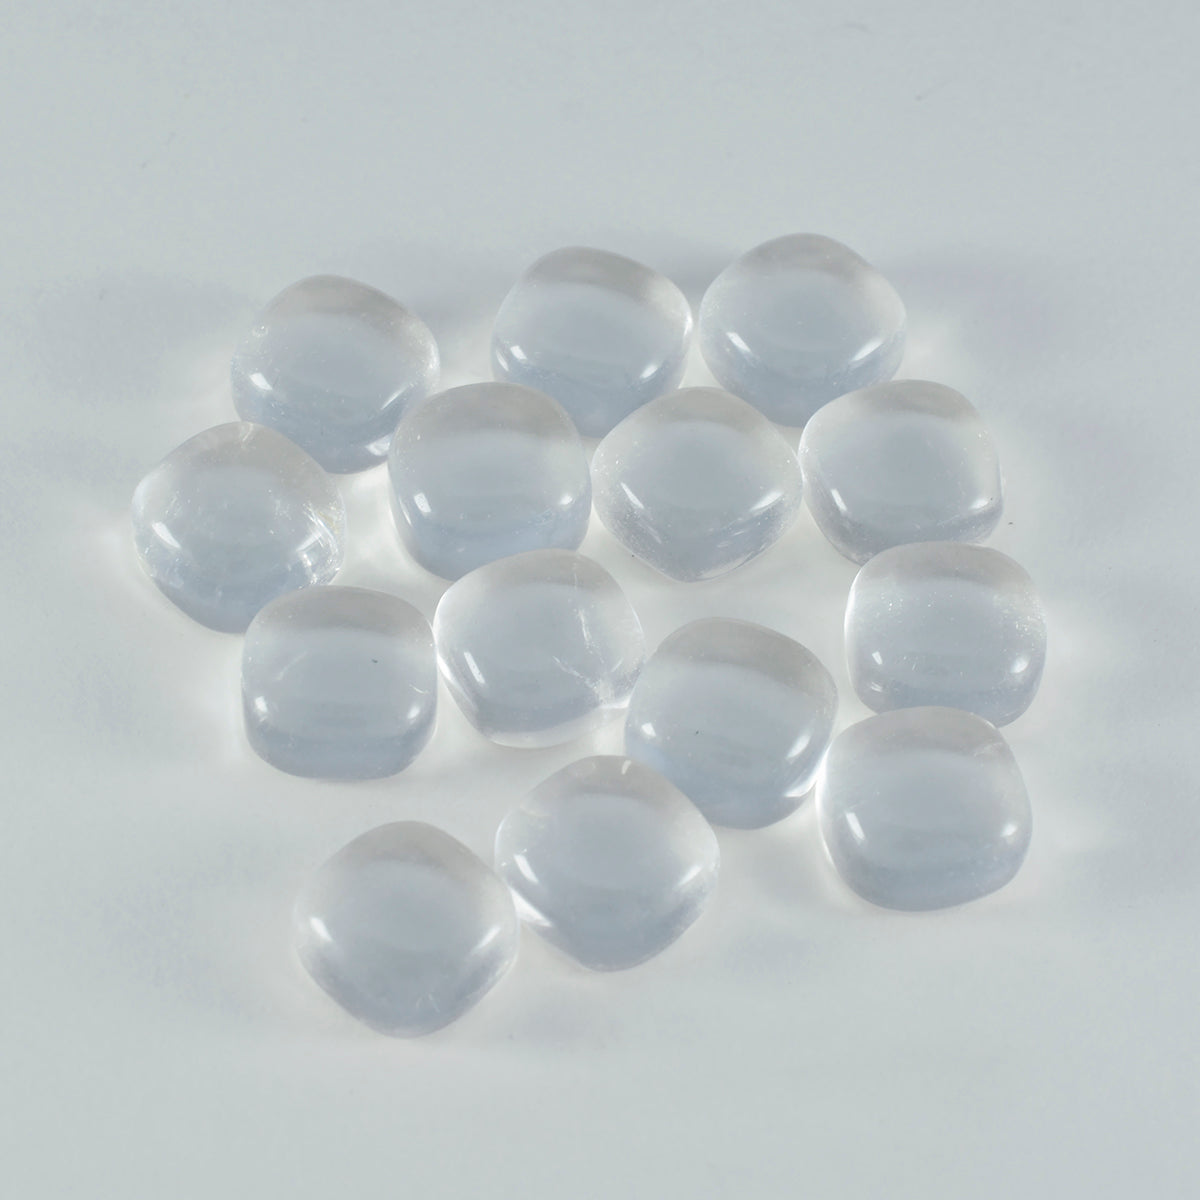 riyogems 1 шт. белый кристалл кварца кабошон 6x6 мм в форме подушки привлекательный качественный драгоценный камень